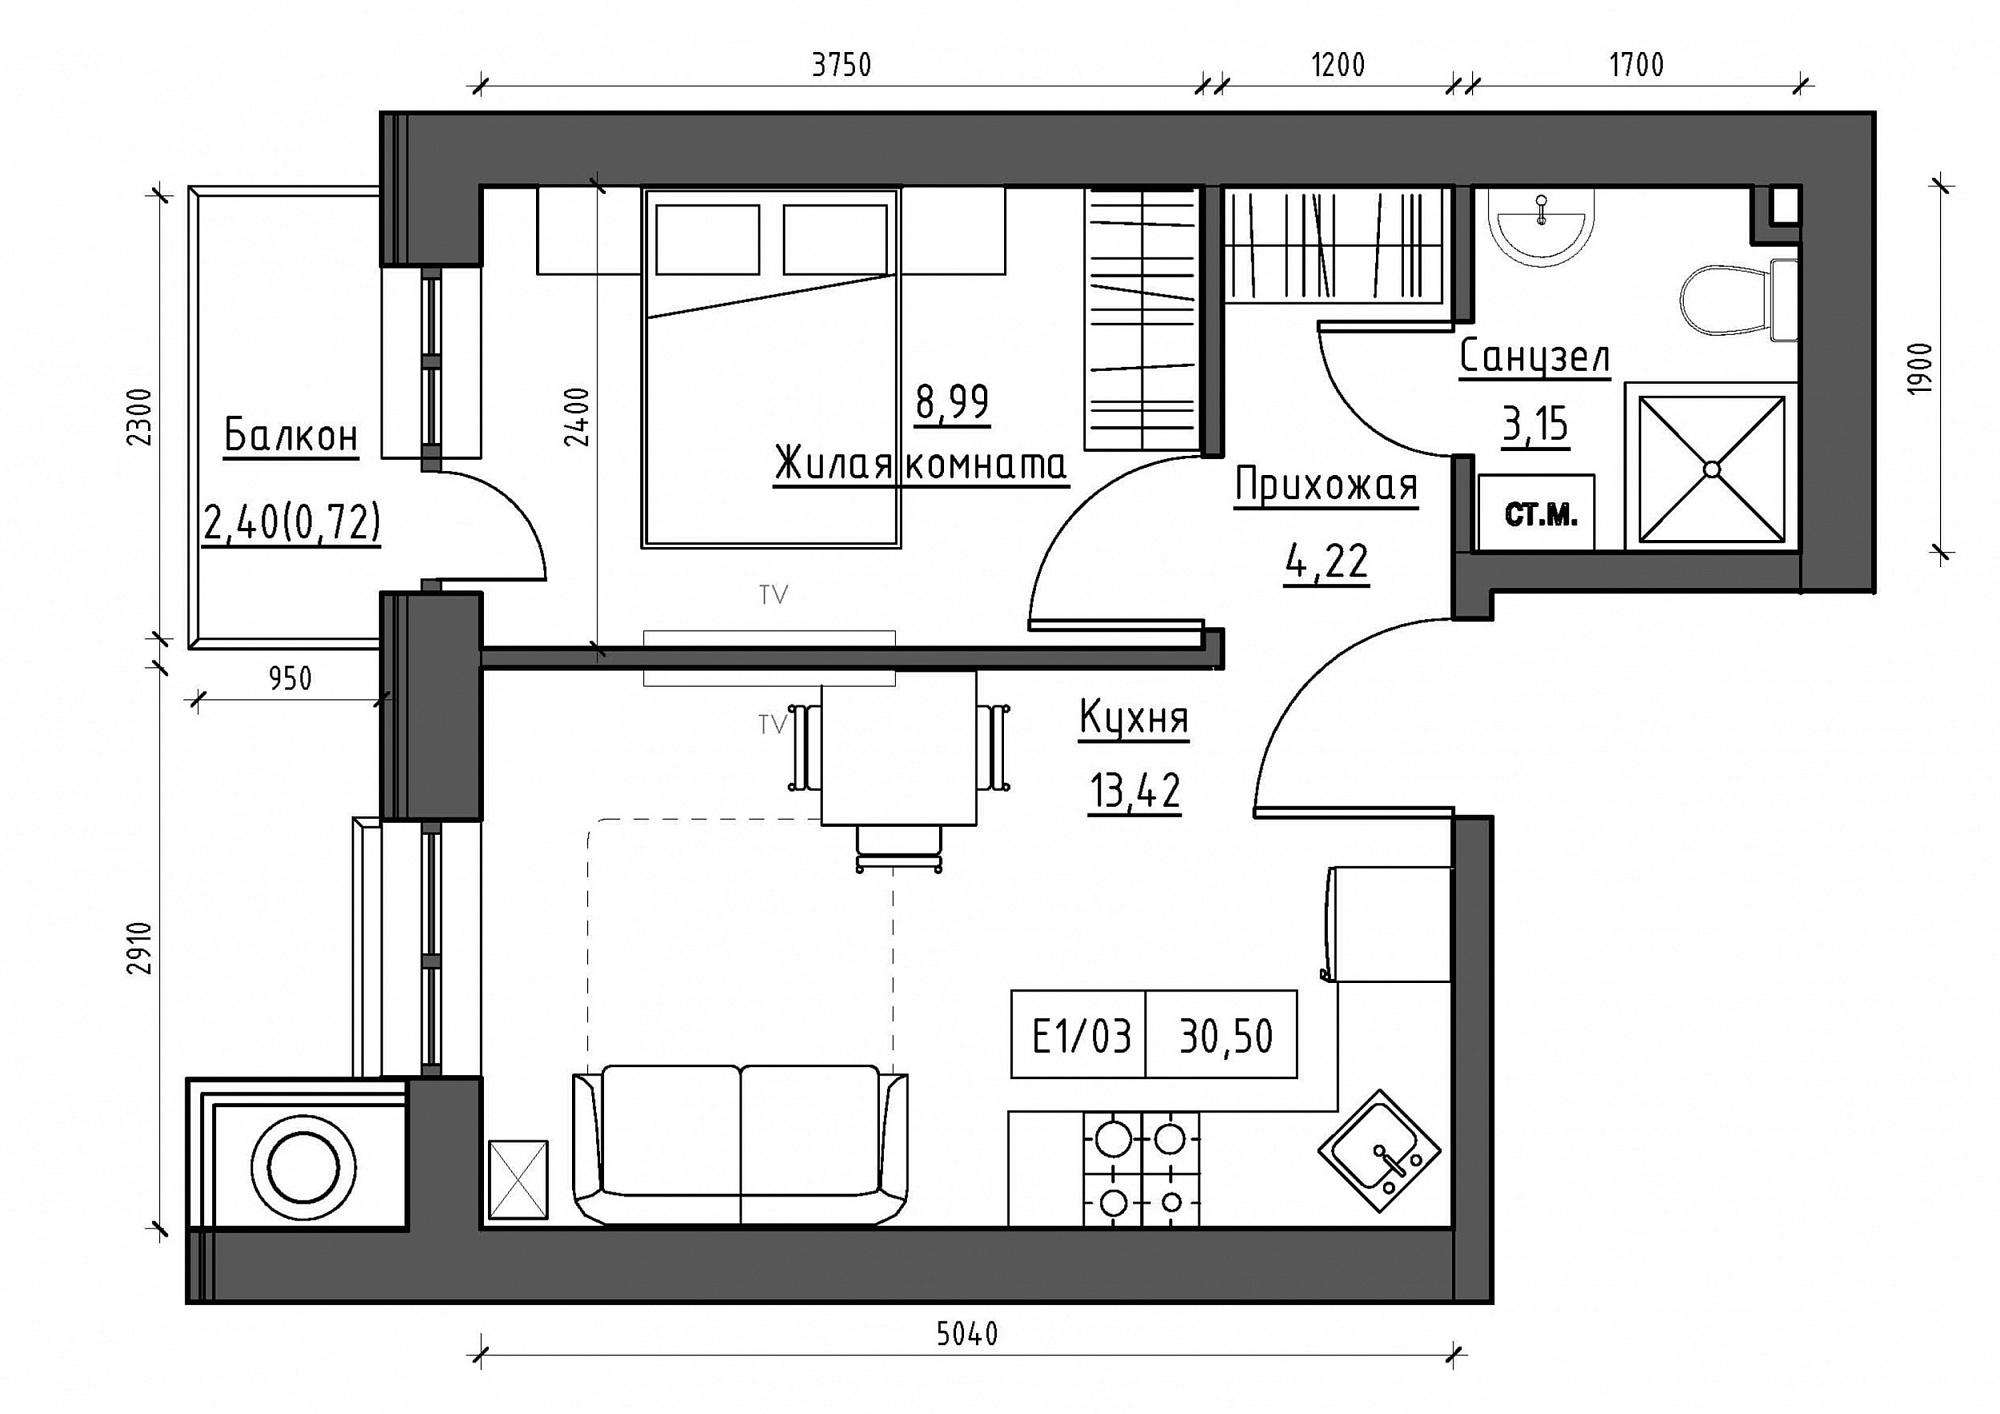 Планировка 1-к квартира площей 30.5м2, KS-011-04/0003.